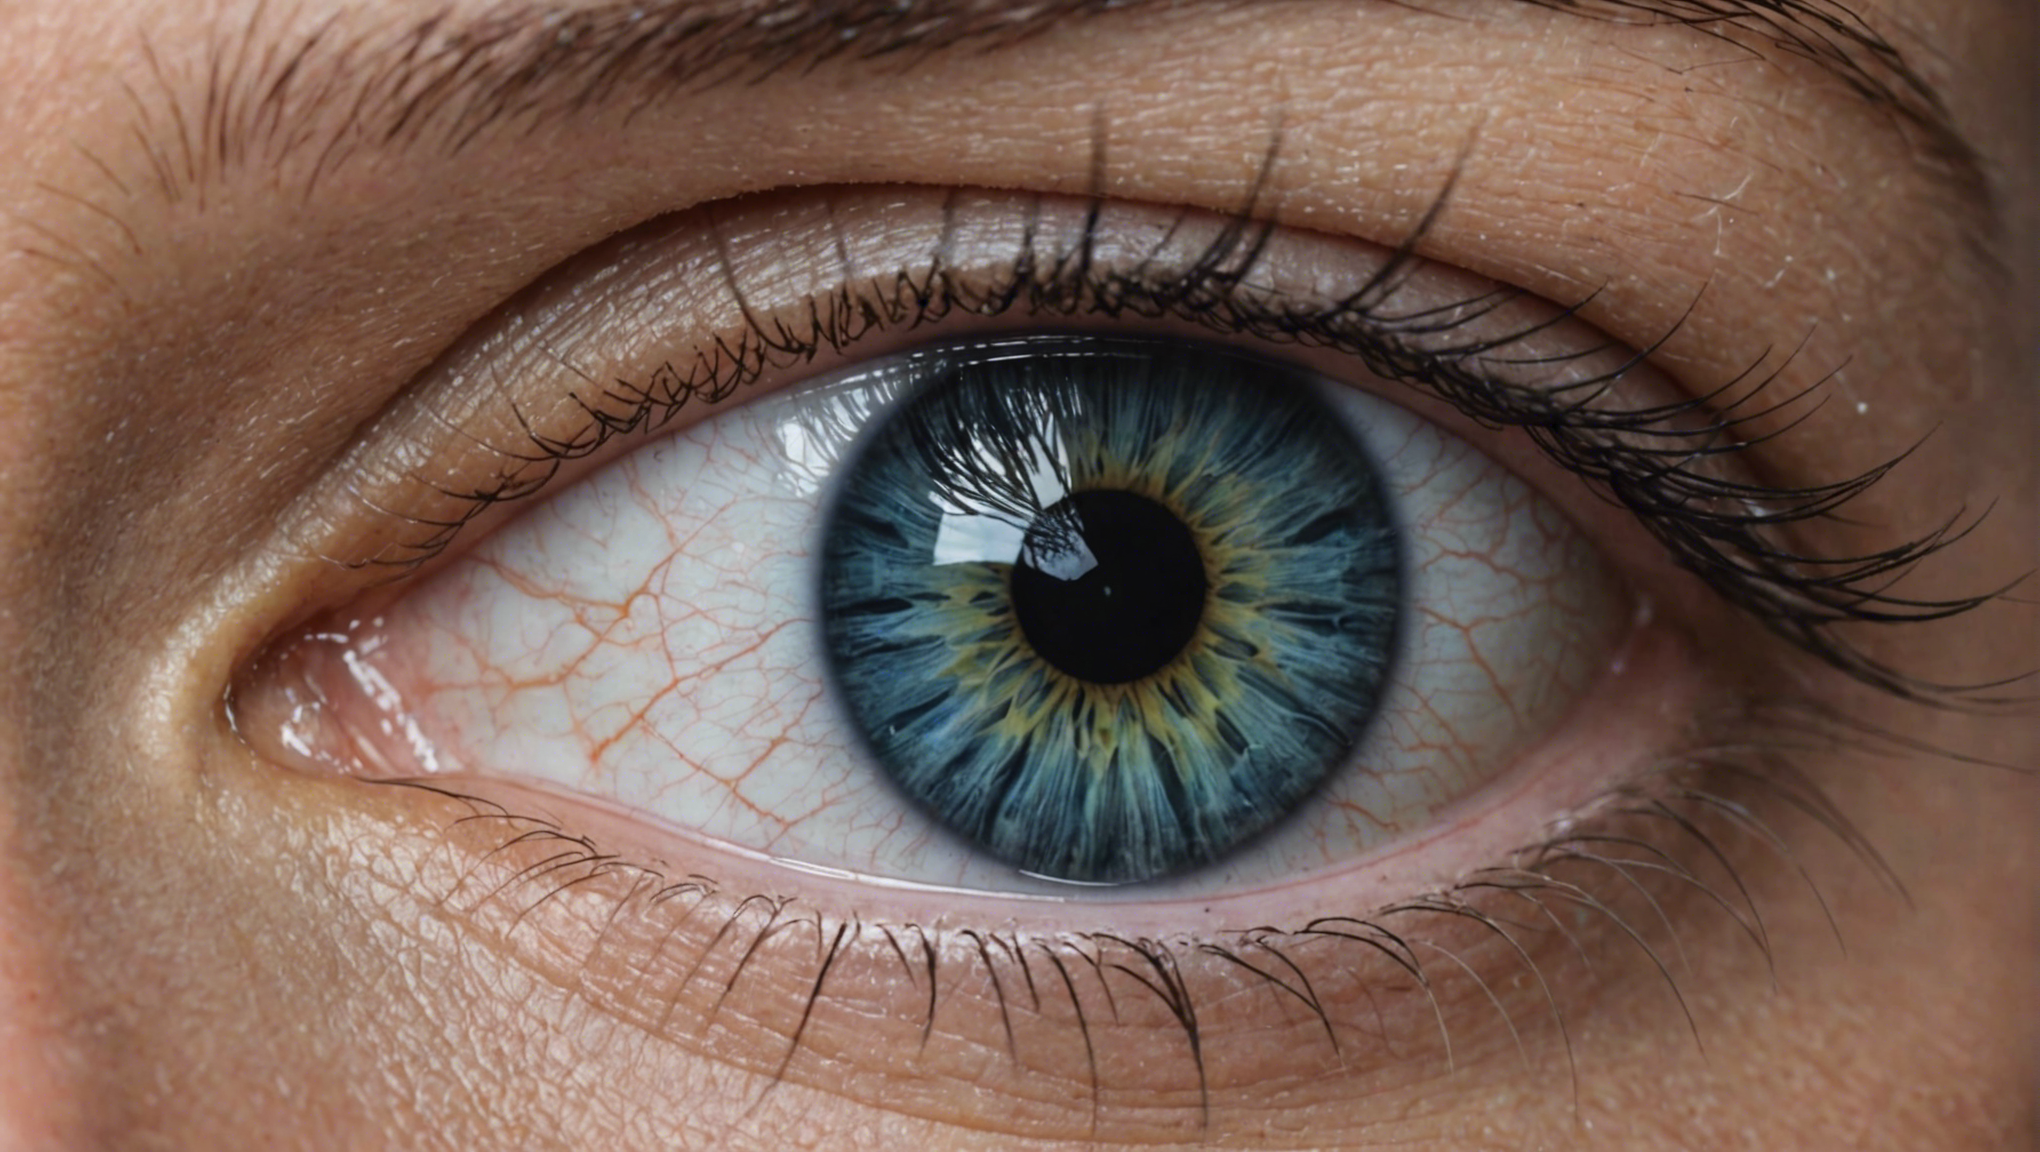 découvrez comment traiter la cataracte et retrouver une vision claire grâce à nos conseils et solutions efficaces.